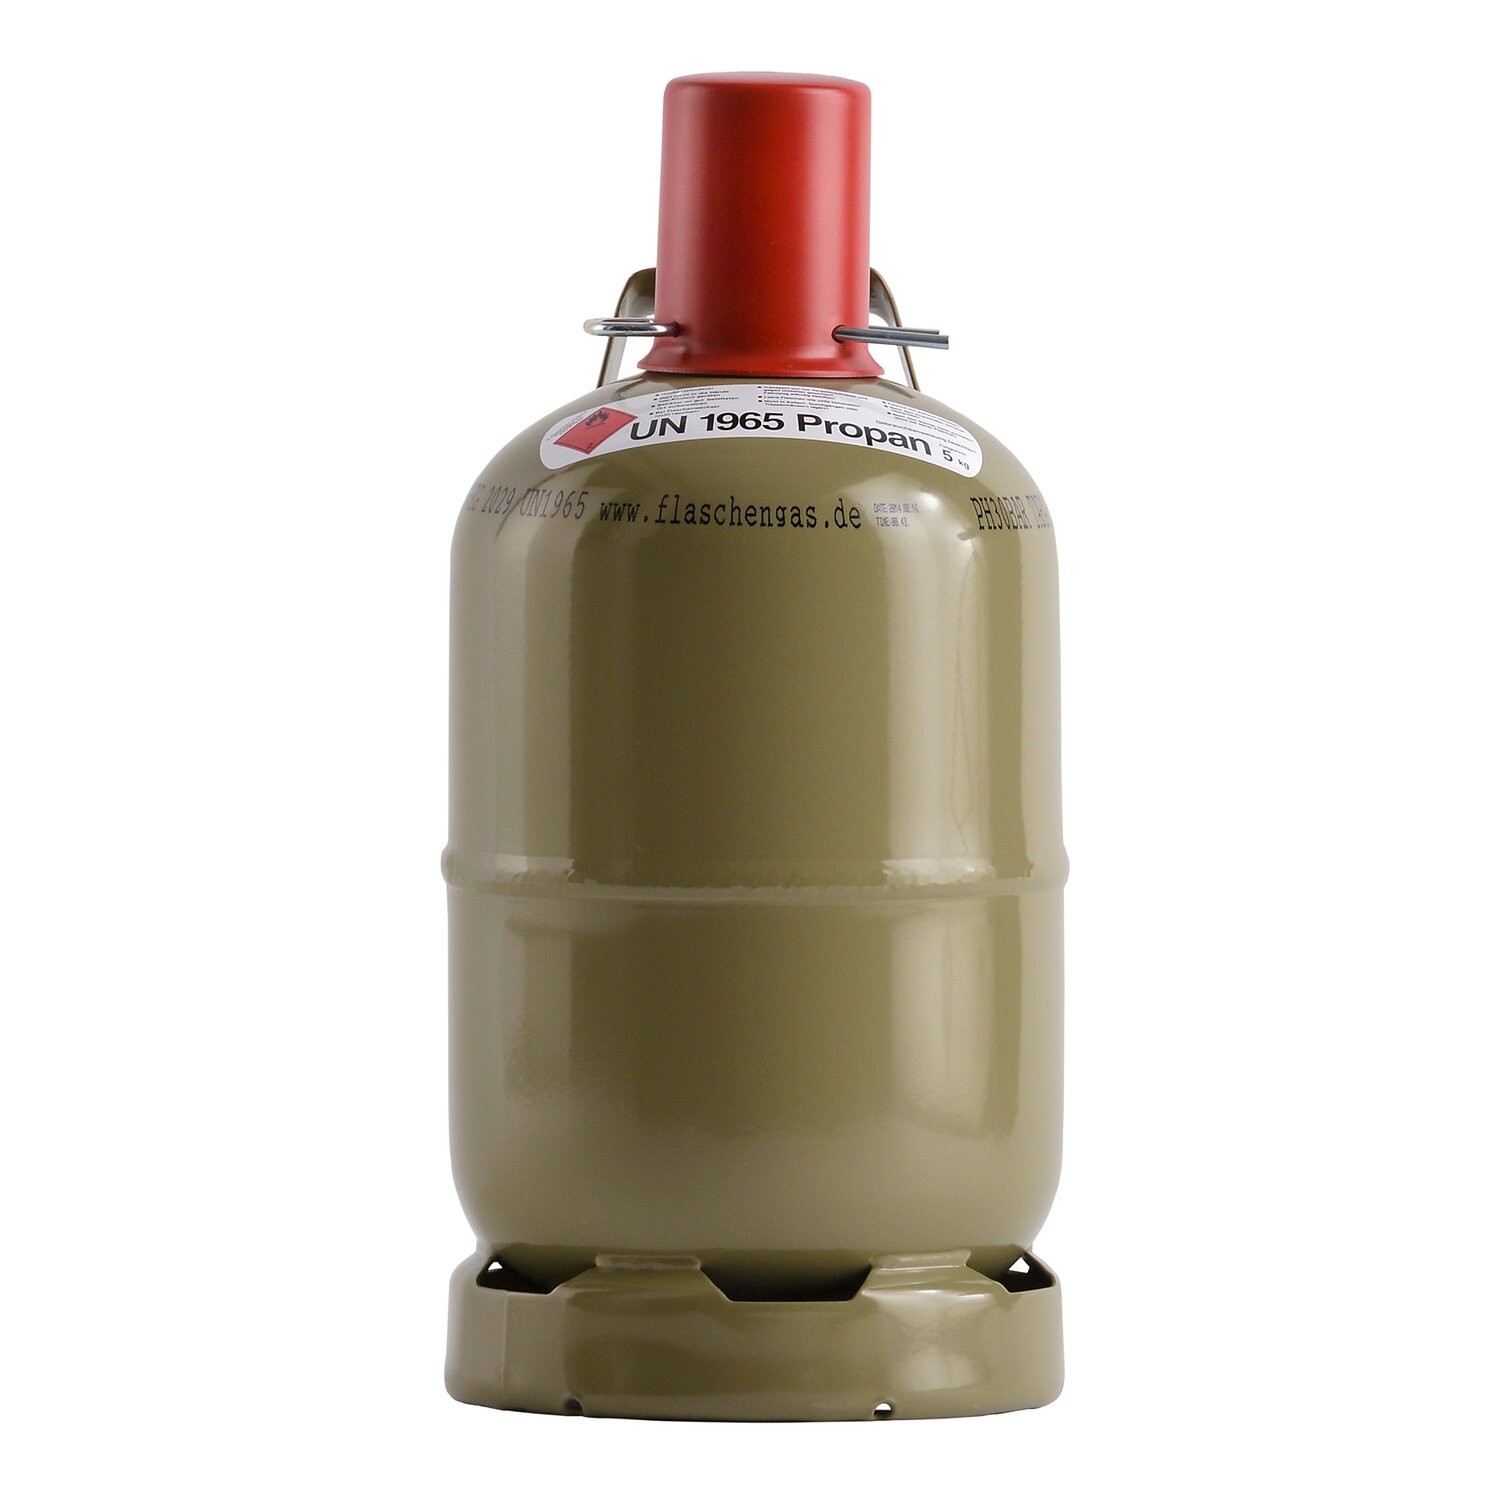 Flaschengas / Drachengas: 5kg Füllung für EURO-Gasflasche